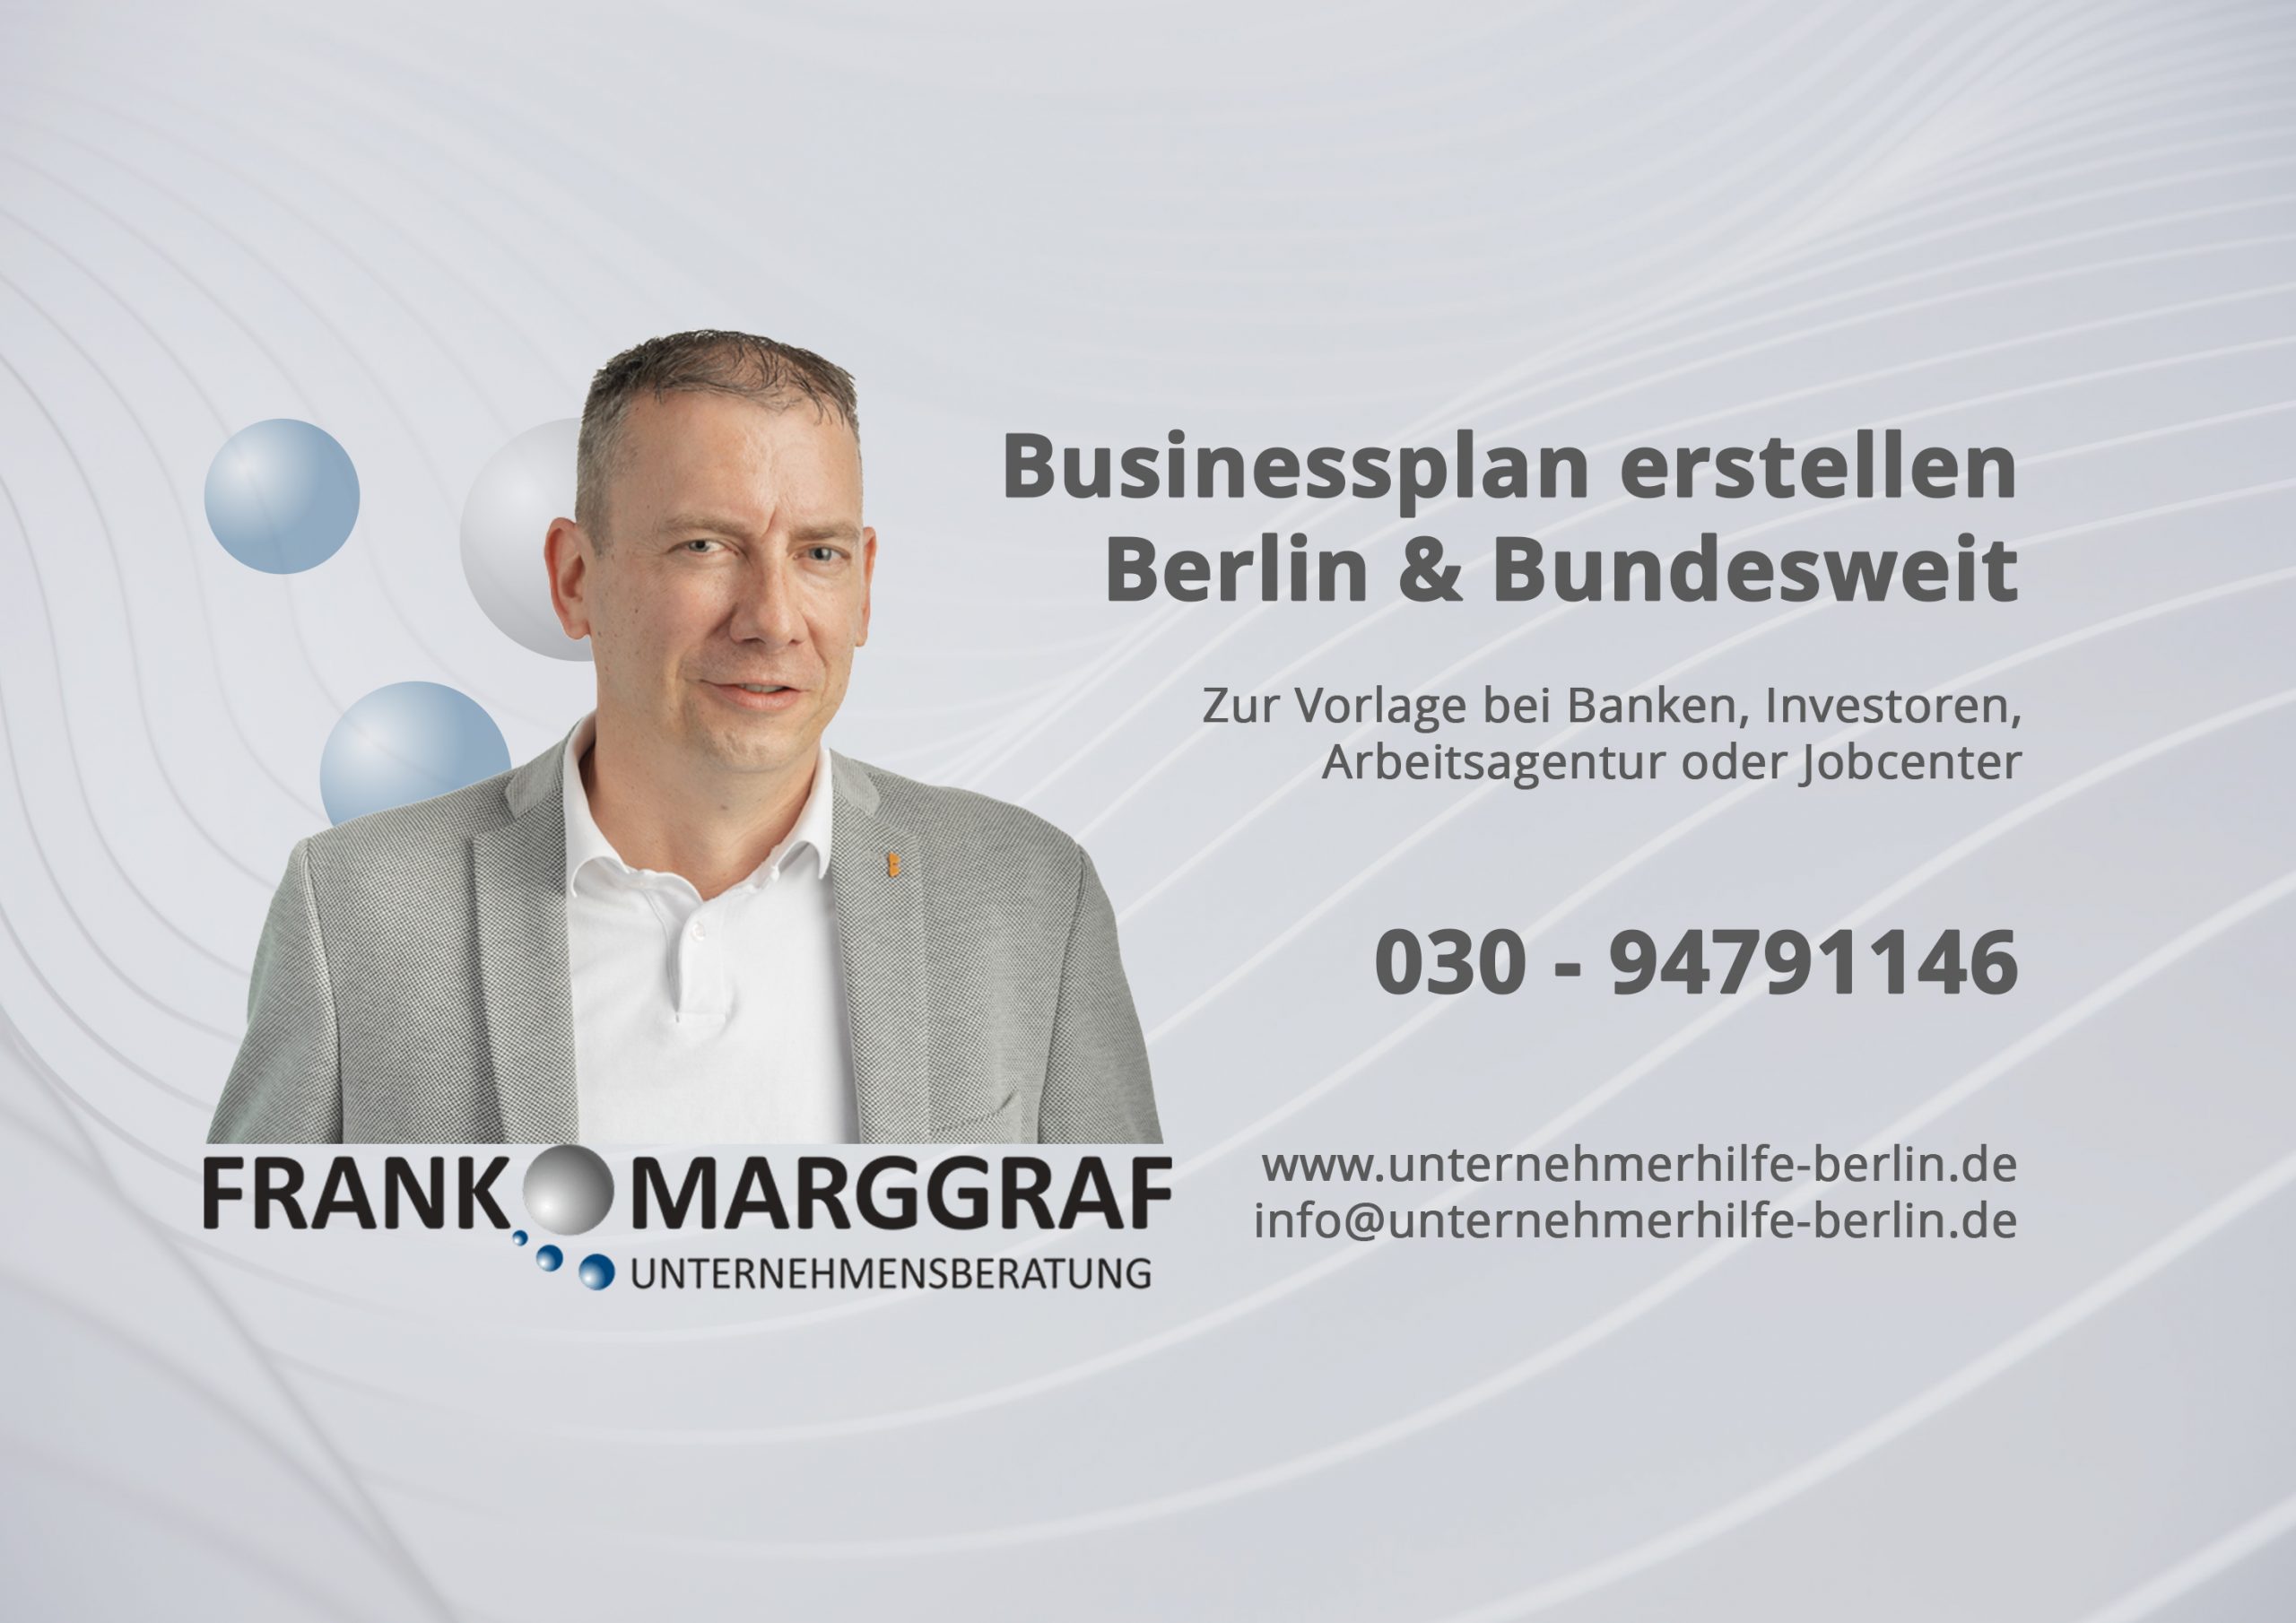 Frank Marggraf Unternehmensberatung Berlin & Brandenburg für Gründer, Selbständige und bestehende Unternehmen